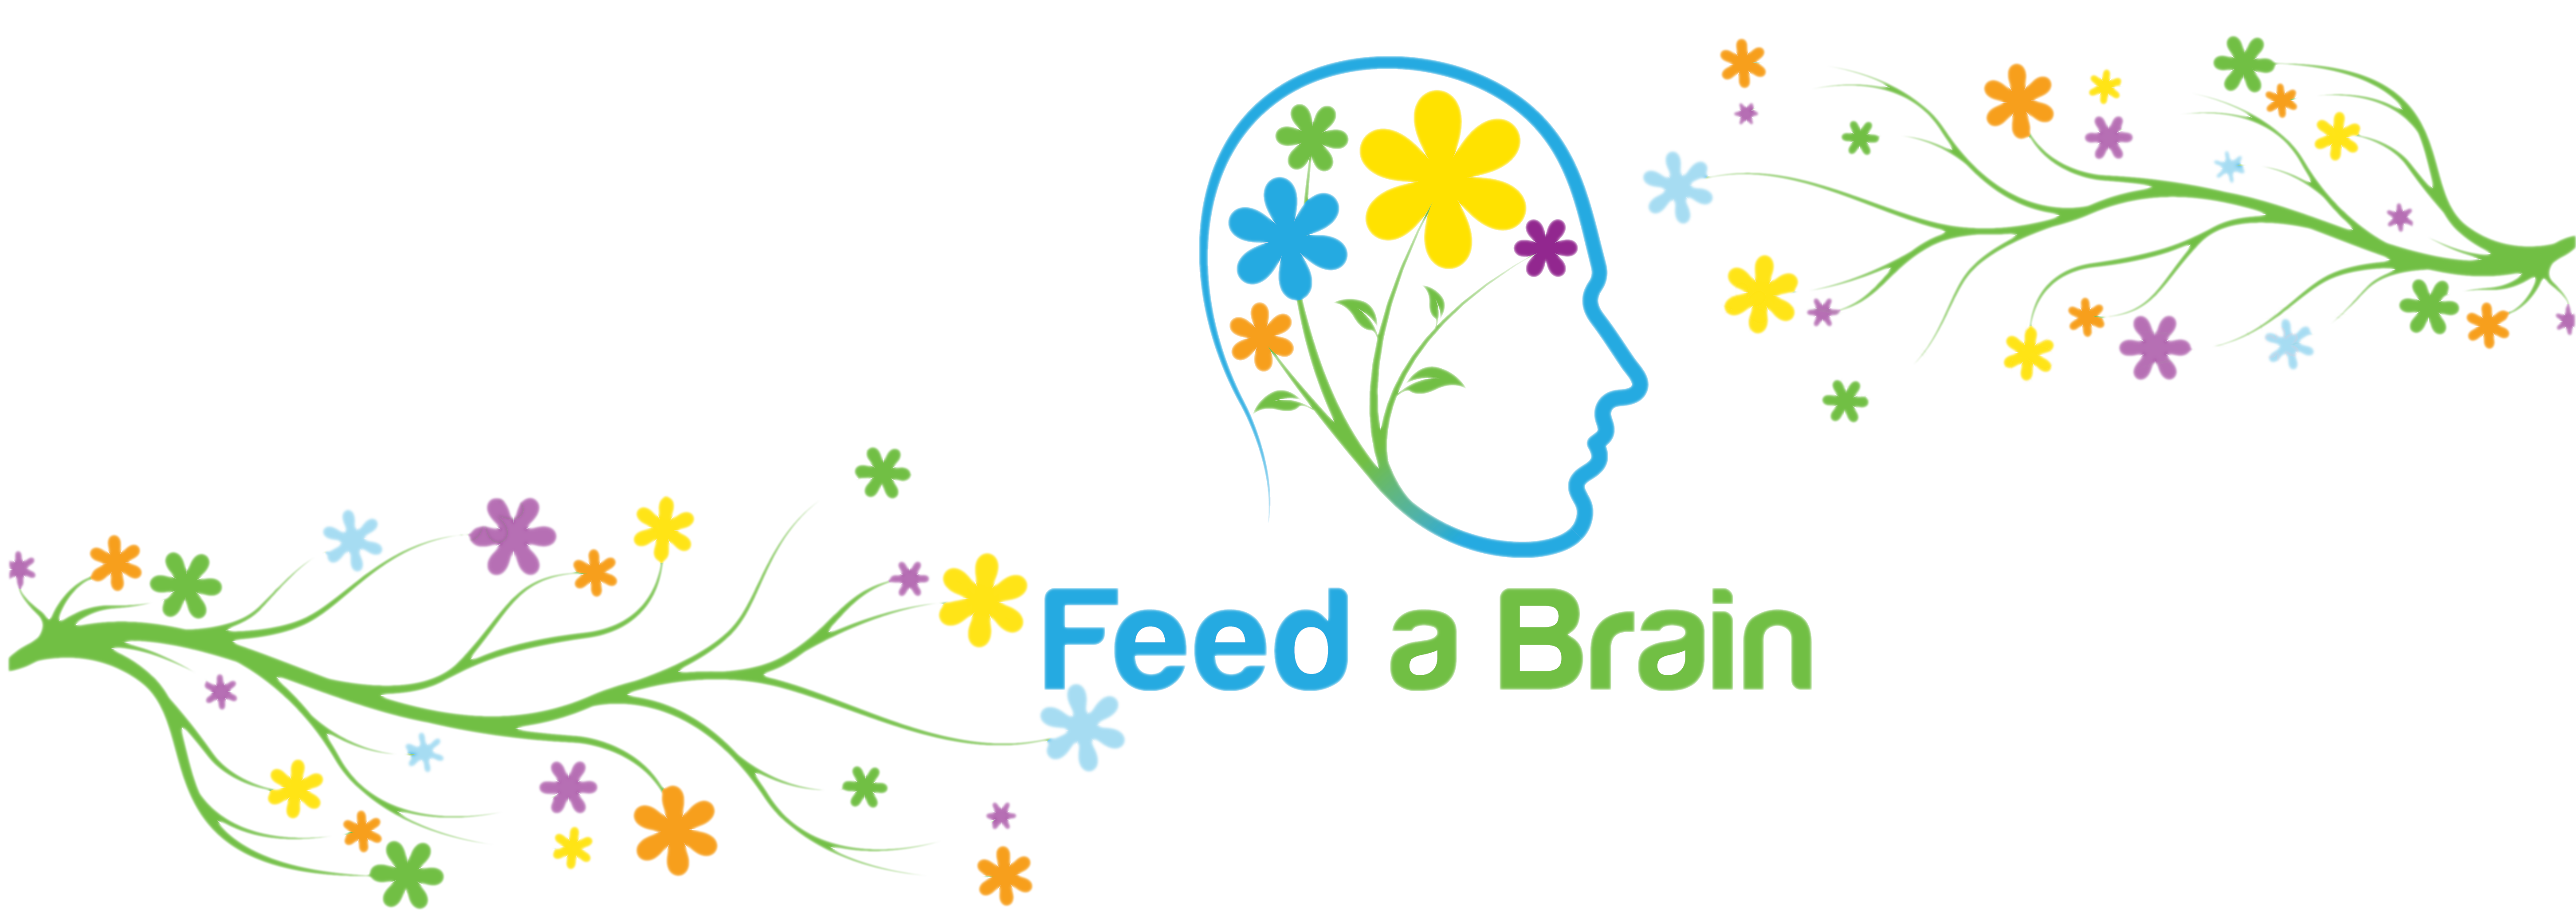 Feed_a_Brain_Banner 2.0